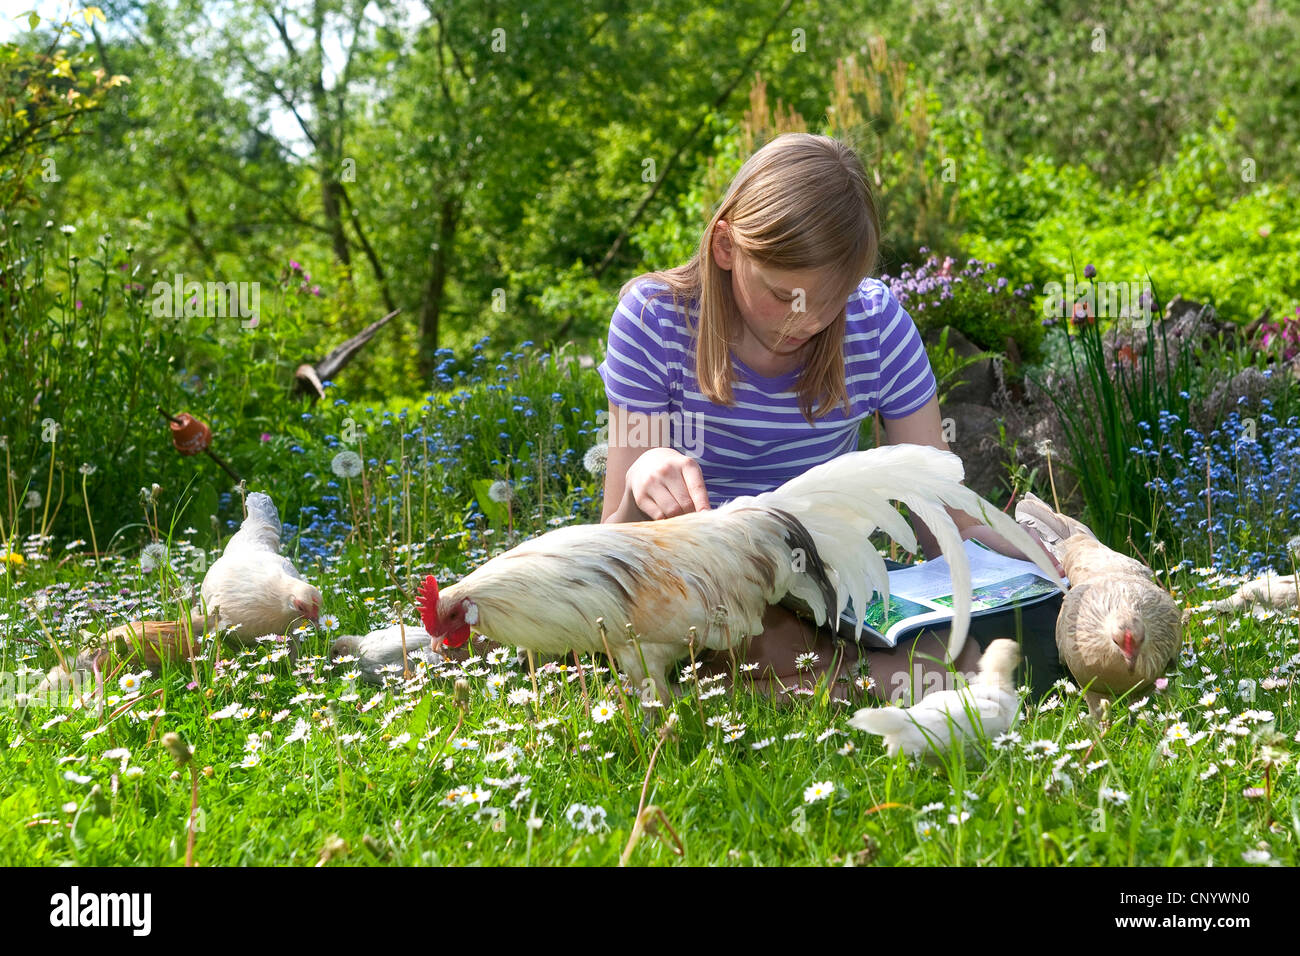 Bantam (Gallus gallus f. domestica), une jeune fille assise dans une prairie avec tame et curieux des poussins et la lecture d'un magazine, Allemagne Banque D'Images